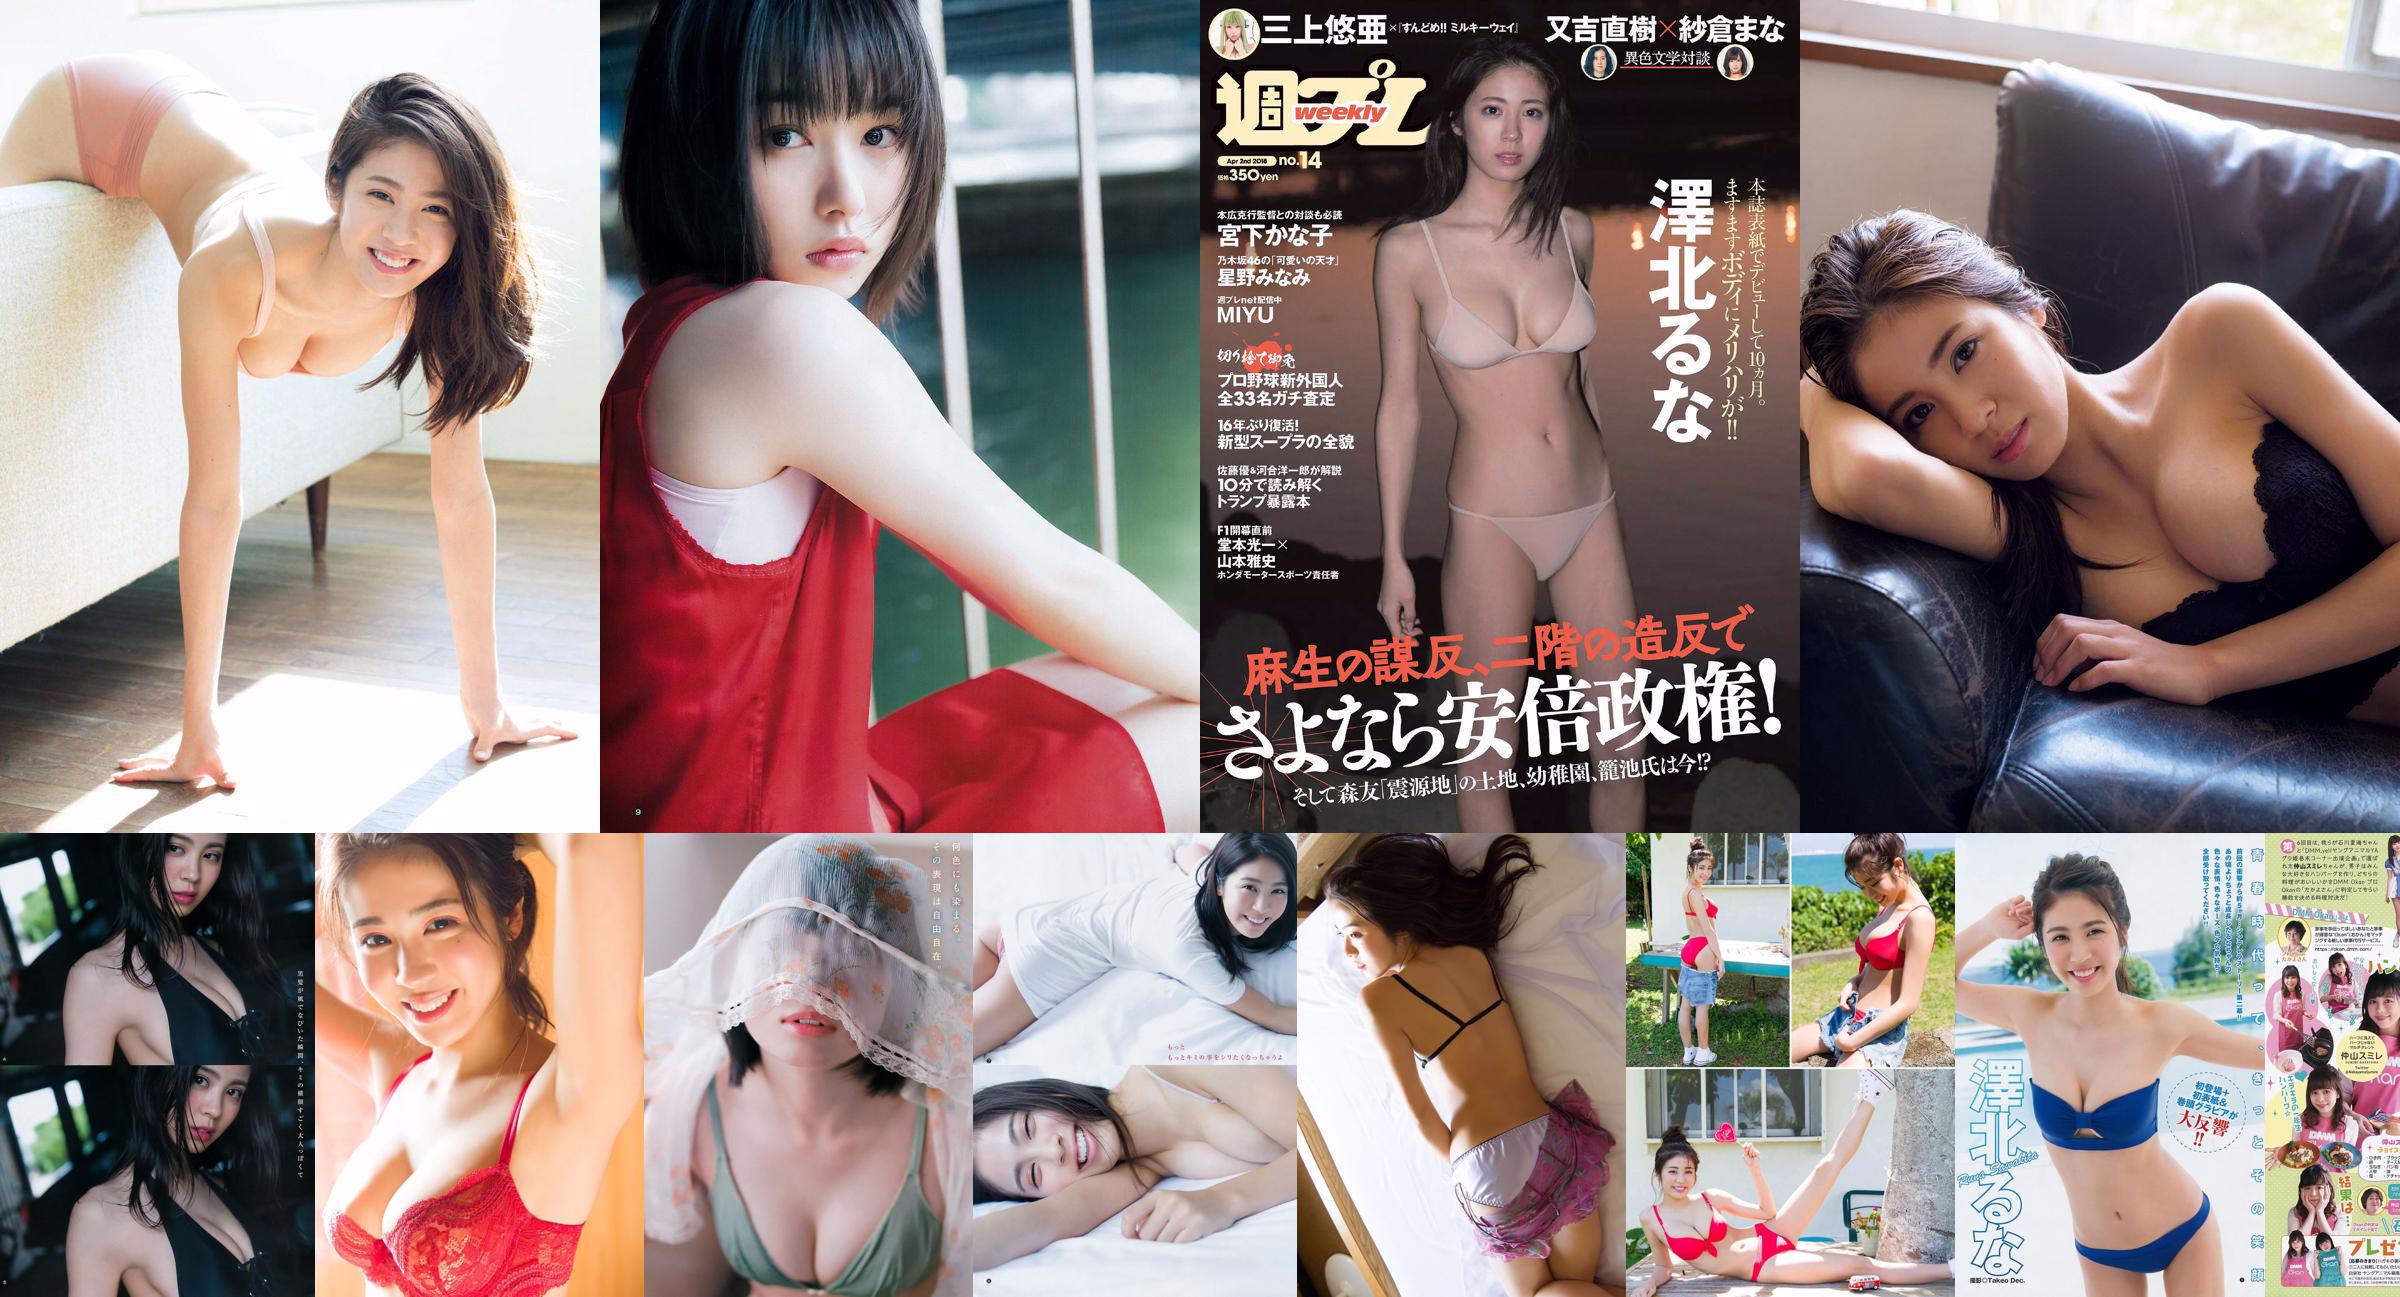 Luna Sawakita Minami Hoshino MIYU Kanako Miyashita Tsurugi Minami Kamei Nina Sakura [Wöchentlicher Playboy] 2018 Nr. 14 Foto No.d89255 Seite 3